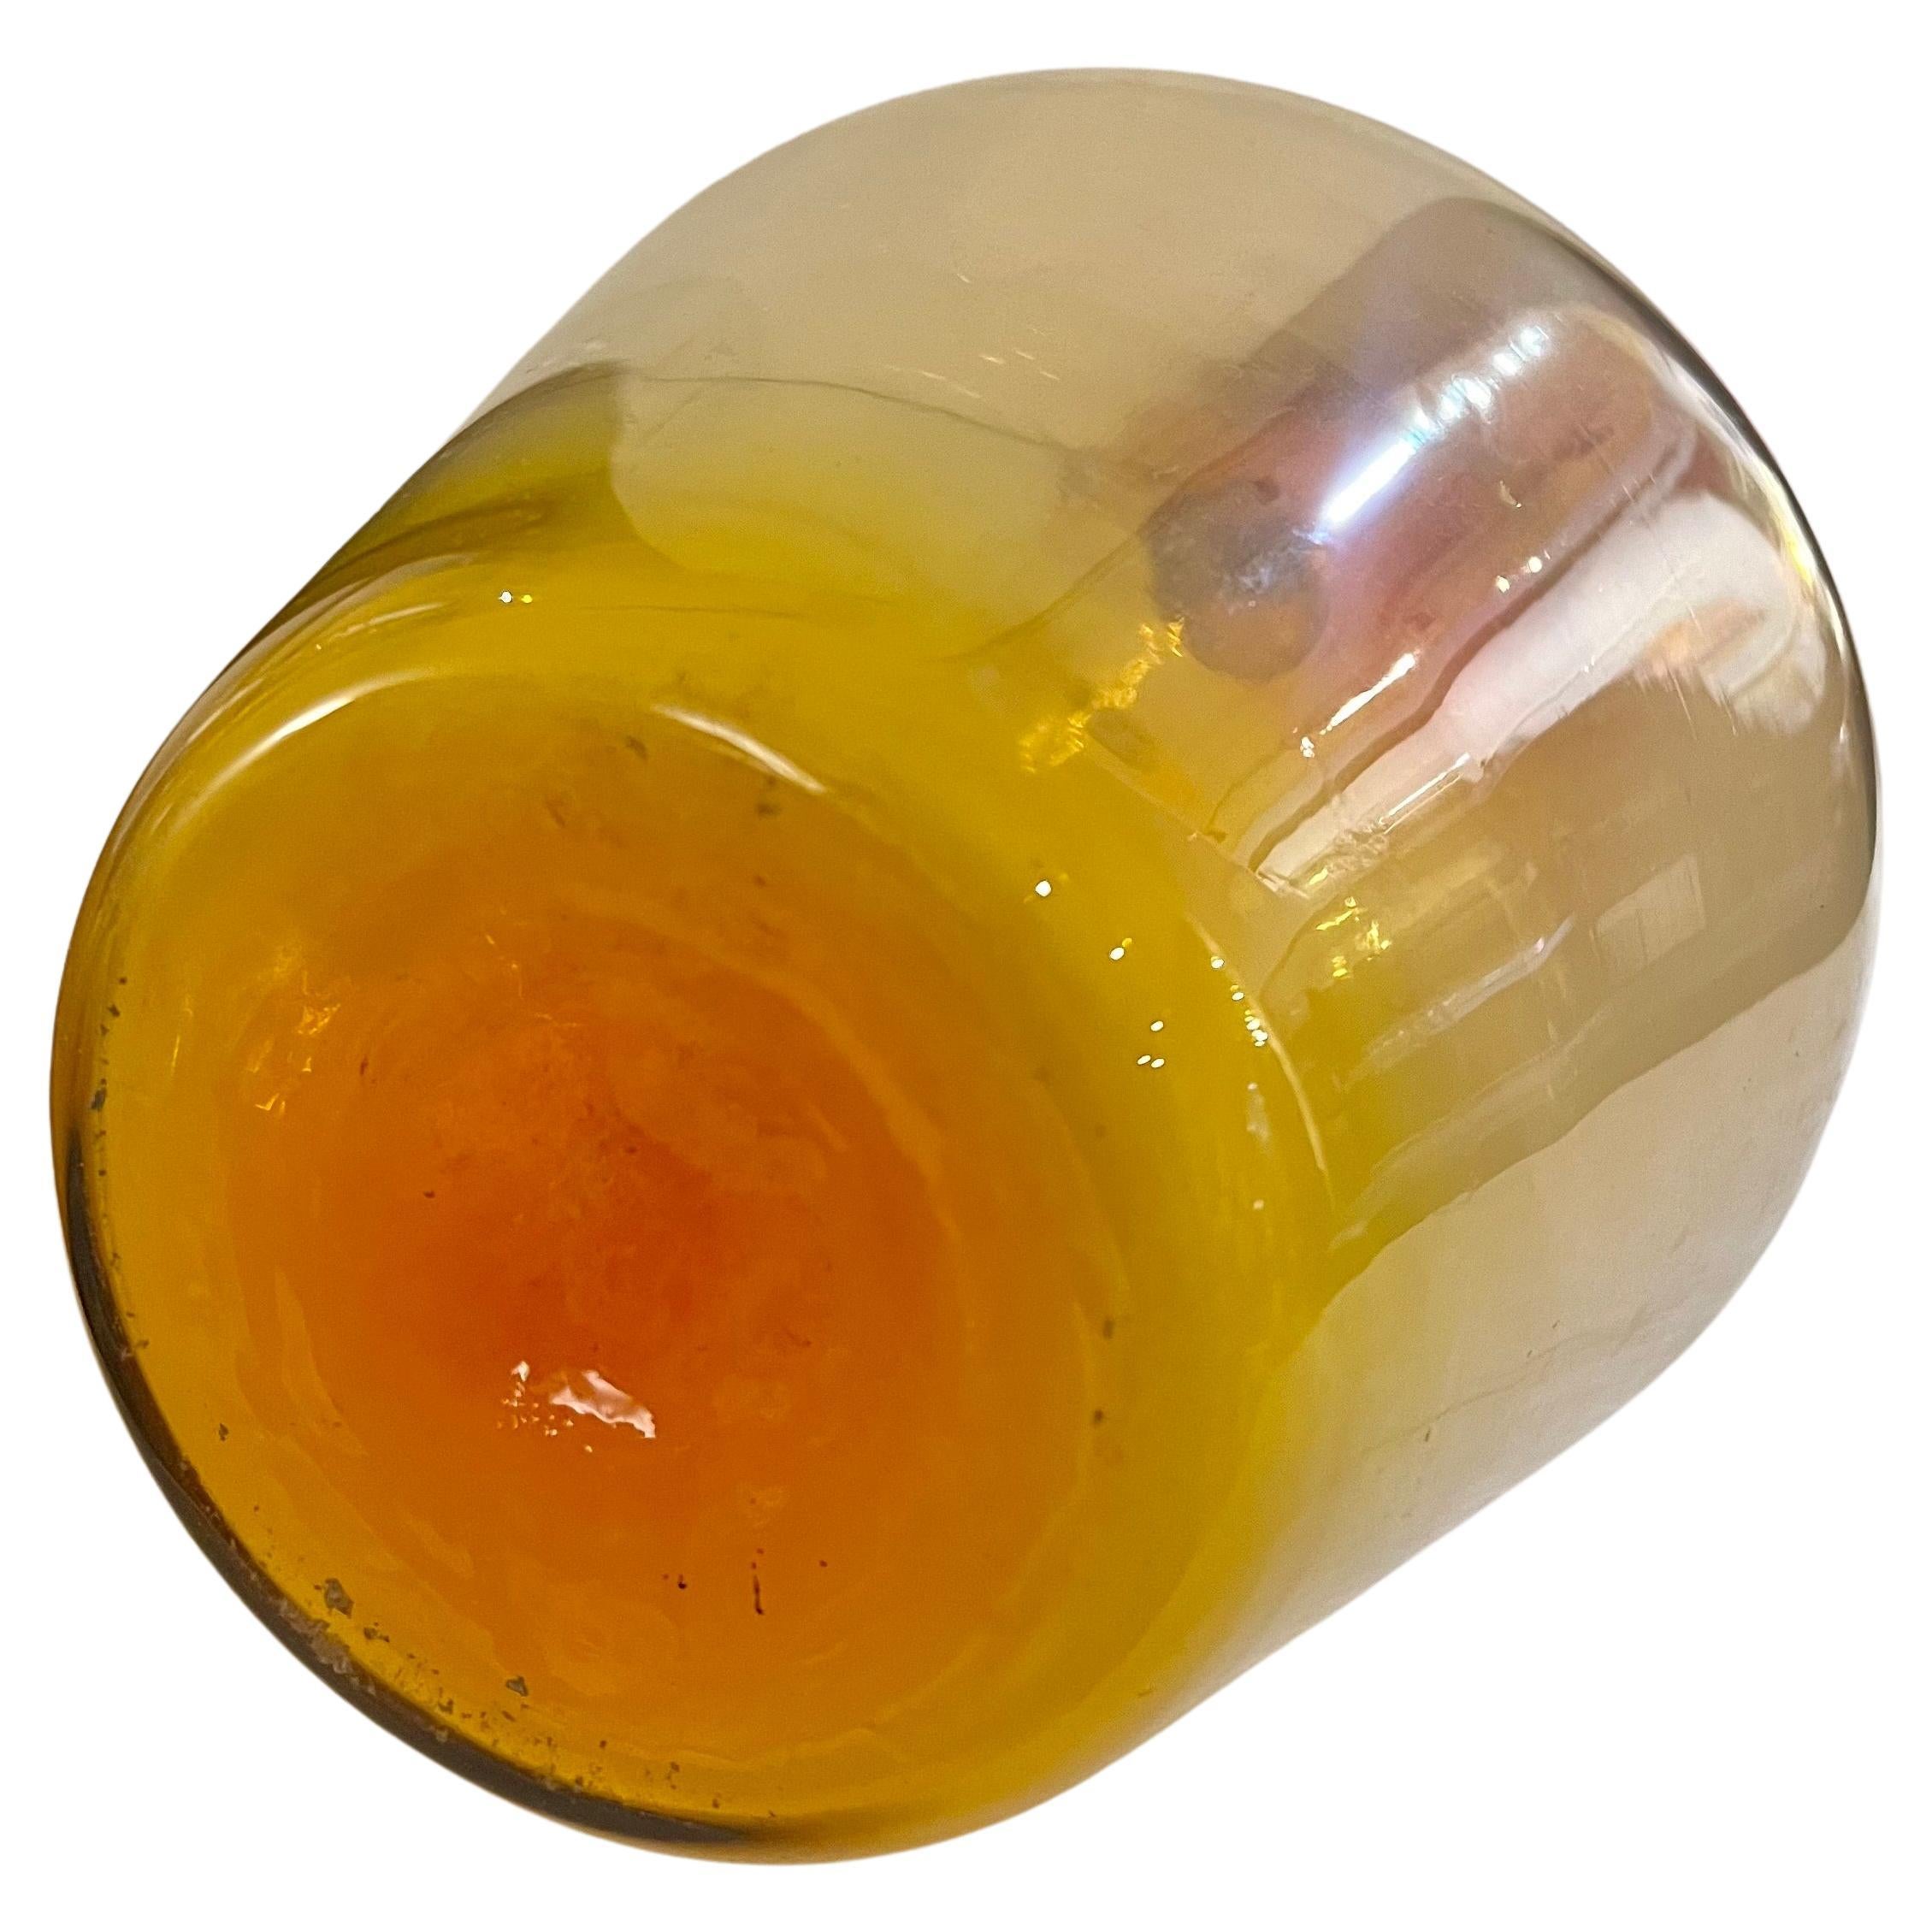 Magnifiques couleurs et excellent état pour ce petit pichet en verre ambré.